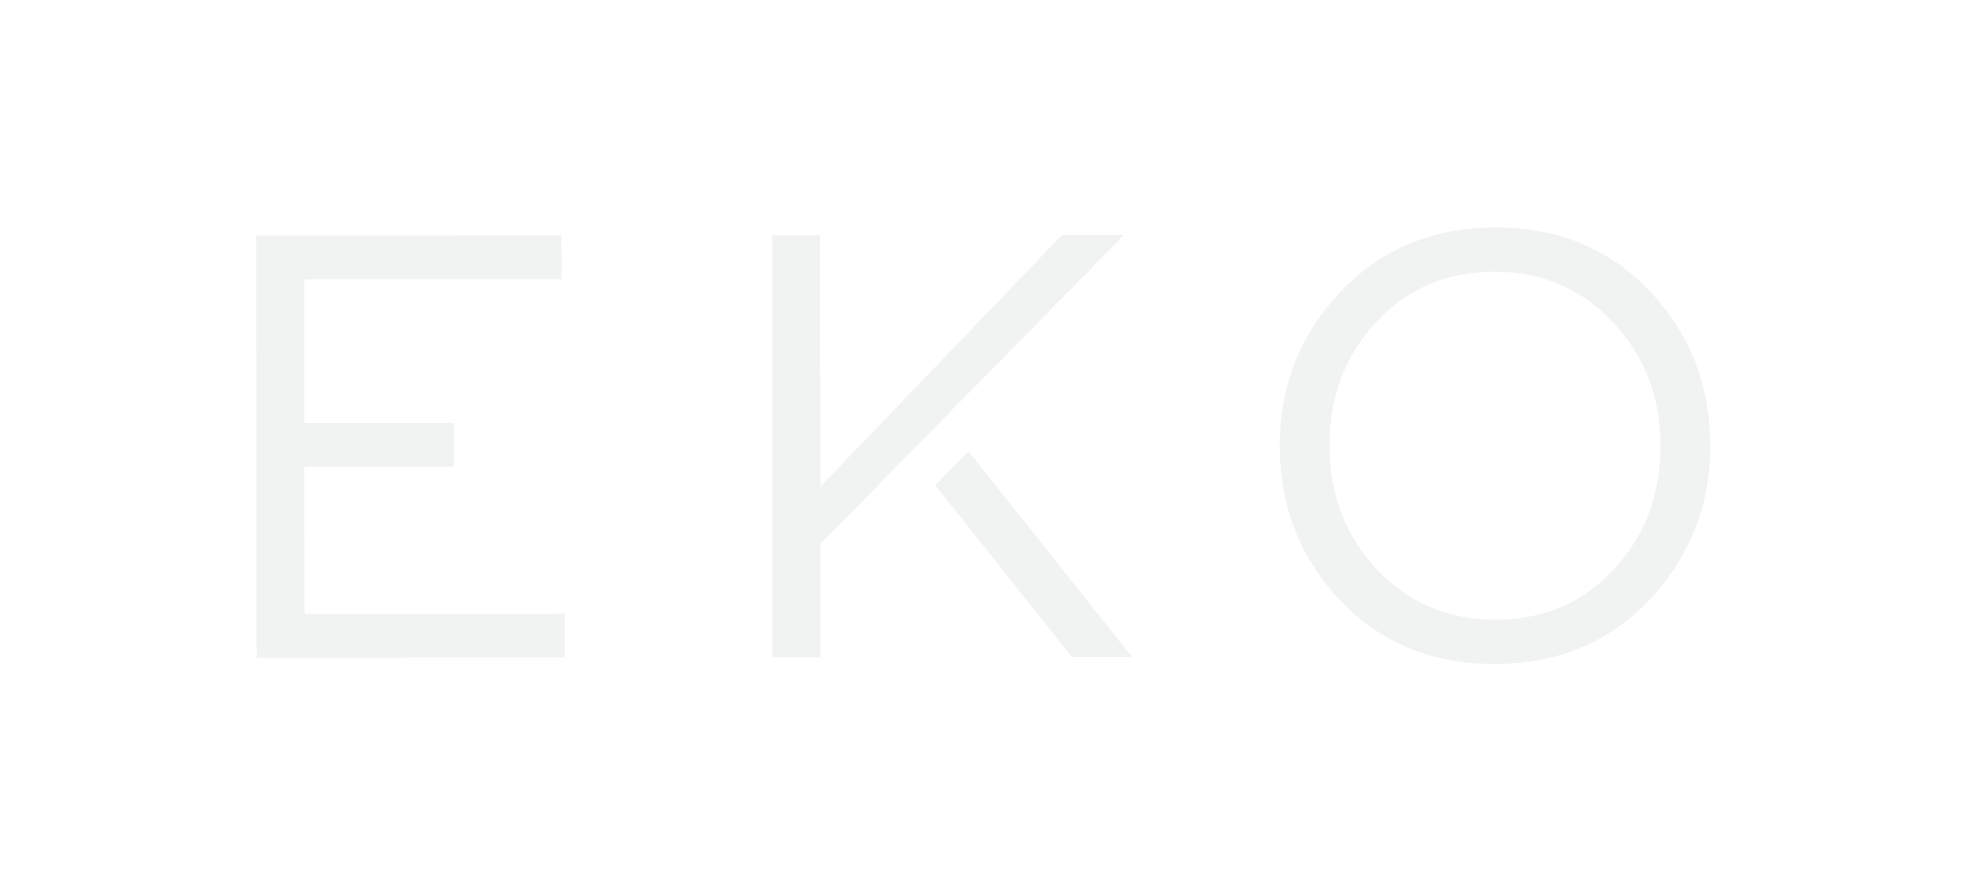 eko logo white